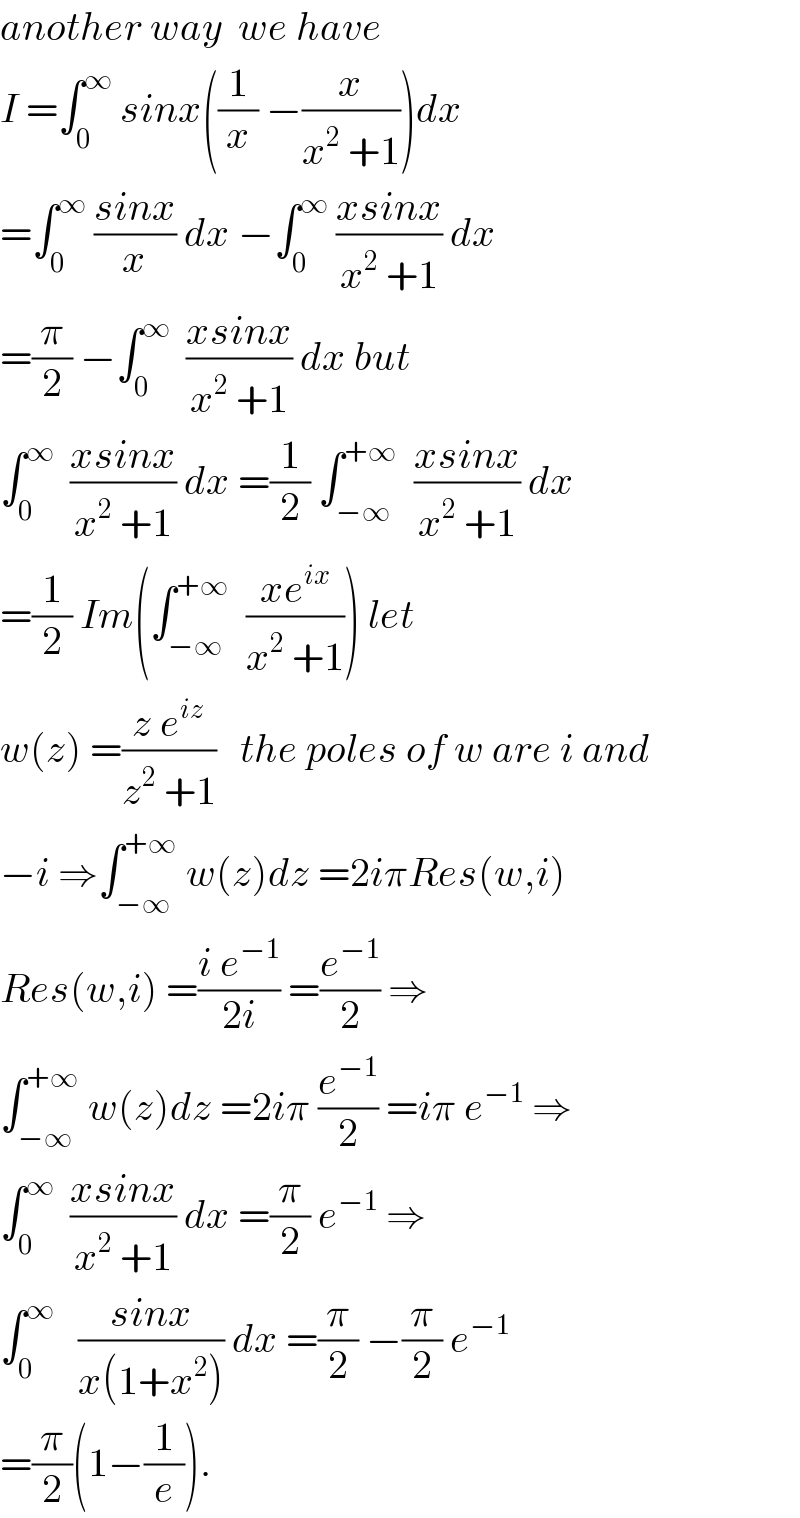 another way  we have  I =∫_0 ^∞  sinx((1/x) −(x/(x^2  +1)))dx  =∫_0 ^∞  ((sinx)/x) dx −∫_0 ^∞  ((xsinx)/(x^2  +1)) dx  =(π/2) −∫_0 ^∞   ((xsinx)/(x^2  +1)) dx but  ∫_0 ^∞   ((xsinx)/(x^2  +1)) dx =(1/2) ∫_(−∞) ^(+∞)   ((xsinx)/(x^2  +1)) dx  =(1/2) Im(∫_(−∞) ^(+∞)   ((xe^(ix) )/(x^2  +1))) let   w(z) =((z e^(iz) )/(z^2  +1))   the poles of w are i and  −i ⇒∫_(−∞) ^(+∞)  w(z)dz =2iπRes(w,i)  Res(w,i) =((i e^(−1) )/(2i)) =(e^(−1) /2) ⇒  ∫_(−∞) ^(+∞)  w(z)dz =2iπ (e^(−1) /2) =iπ e^(−1)  ⇒  ∫_0 ^∞   ((xsinx)/(x^2  +1)) dx =(π/2) e^(−1)  ⇒  ∫_0 ^∞    ((sinx)/(x(1+x^2 ))) dx =(π/2) −(π/2) e^(−1)   =(π/2)(1−(1/e)).  